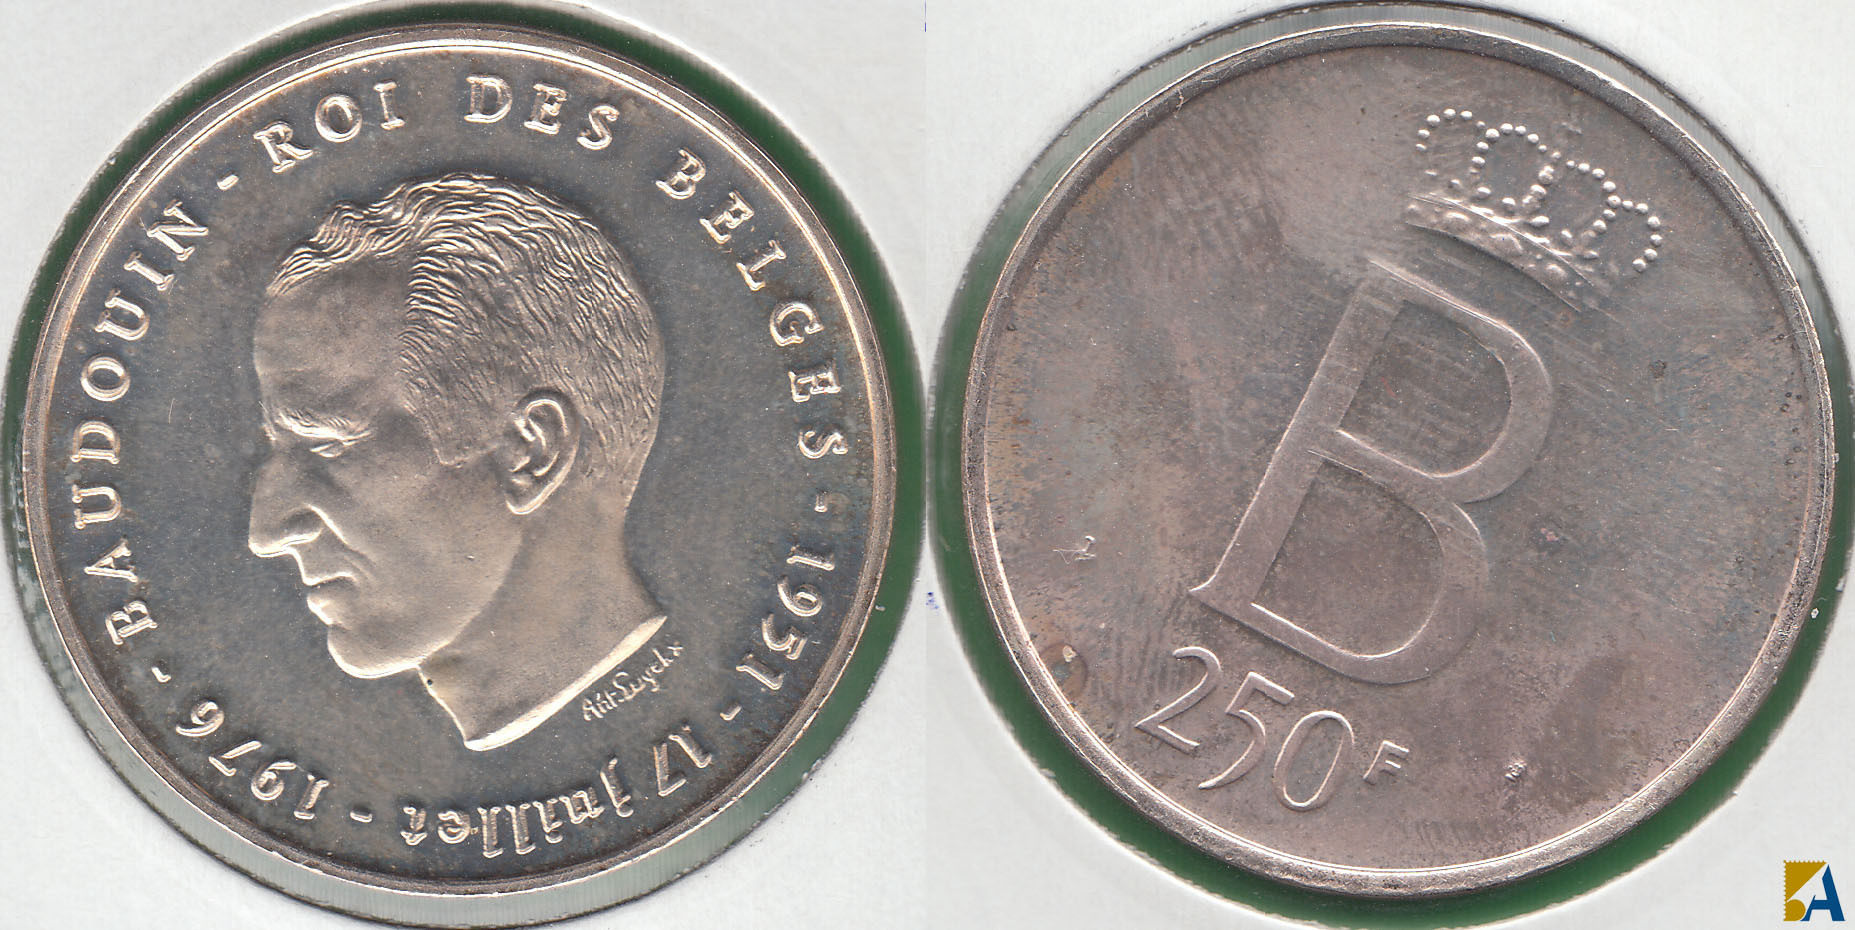 BELGICA - BELGIUM. 250 FRANCOS (FRANCS) DE 1976. PLATA 0.835. (2)